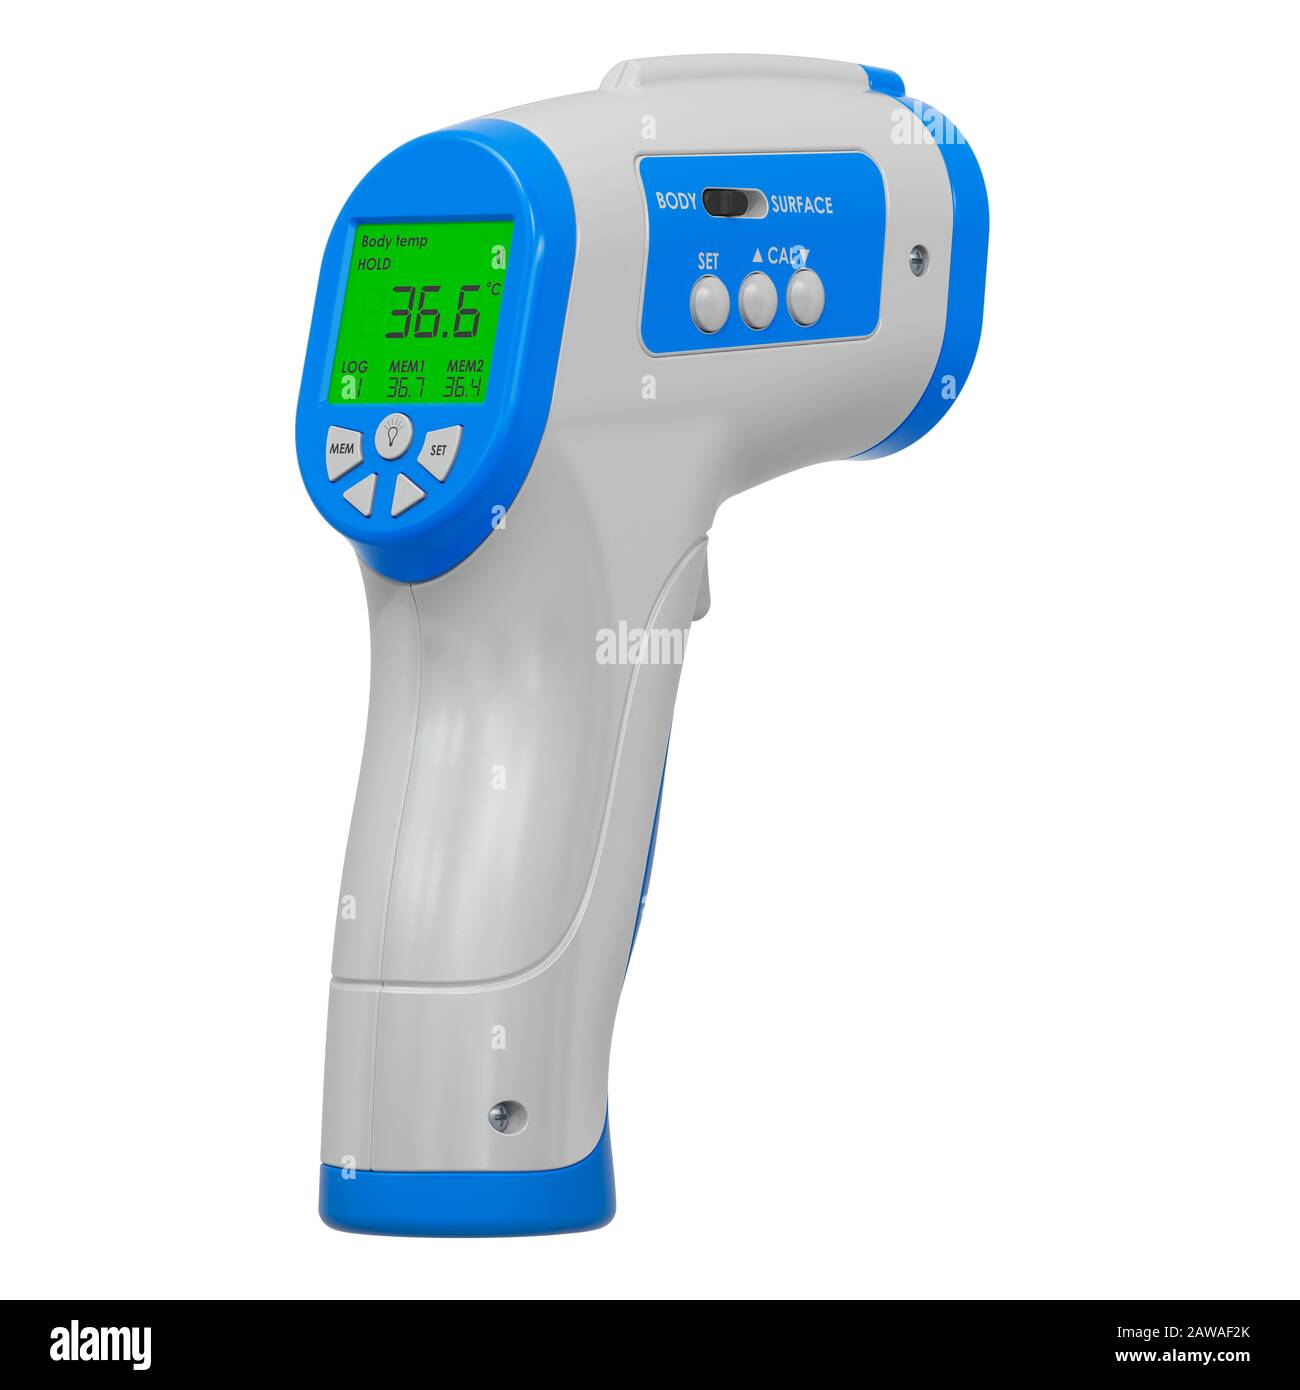 Termometro digitale a infrarossi senza contatto IR, rendering 3D isolato su sfondo bianco Foto Stock